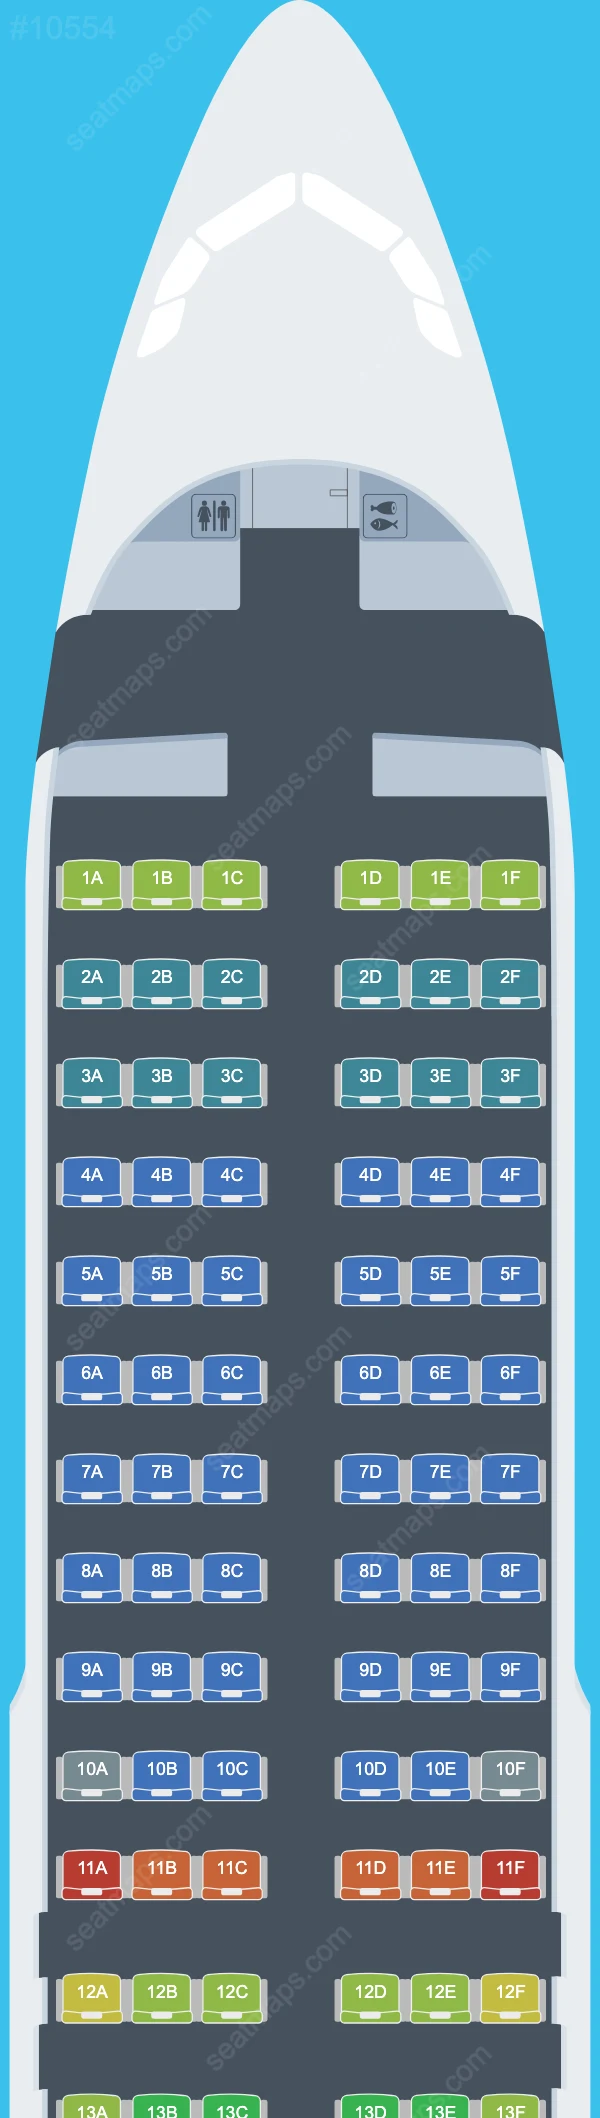 Volaris El Salvador Airbus A320 Seat Maps A320-200neo